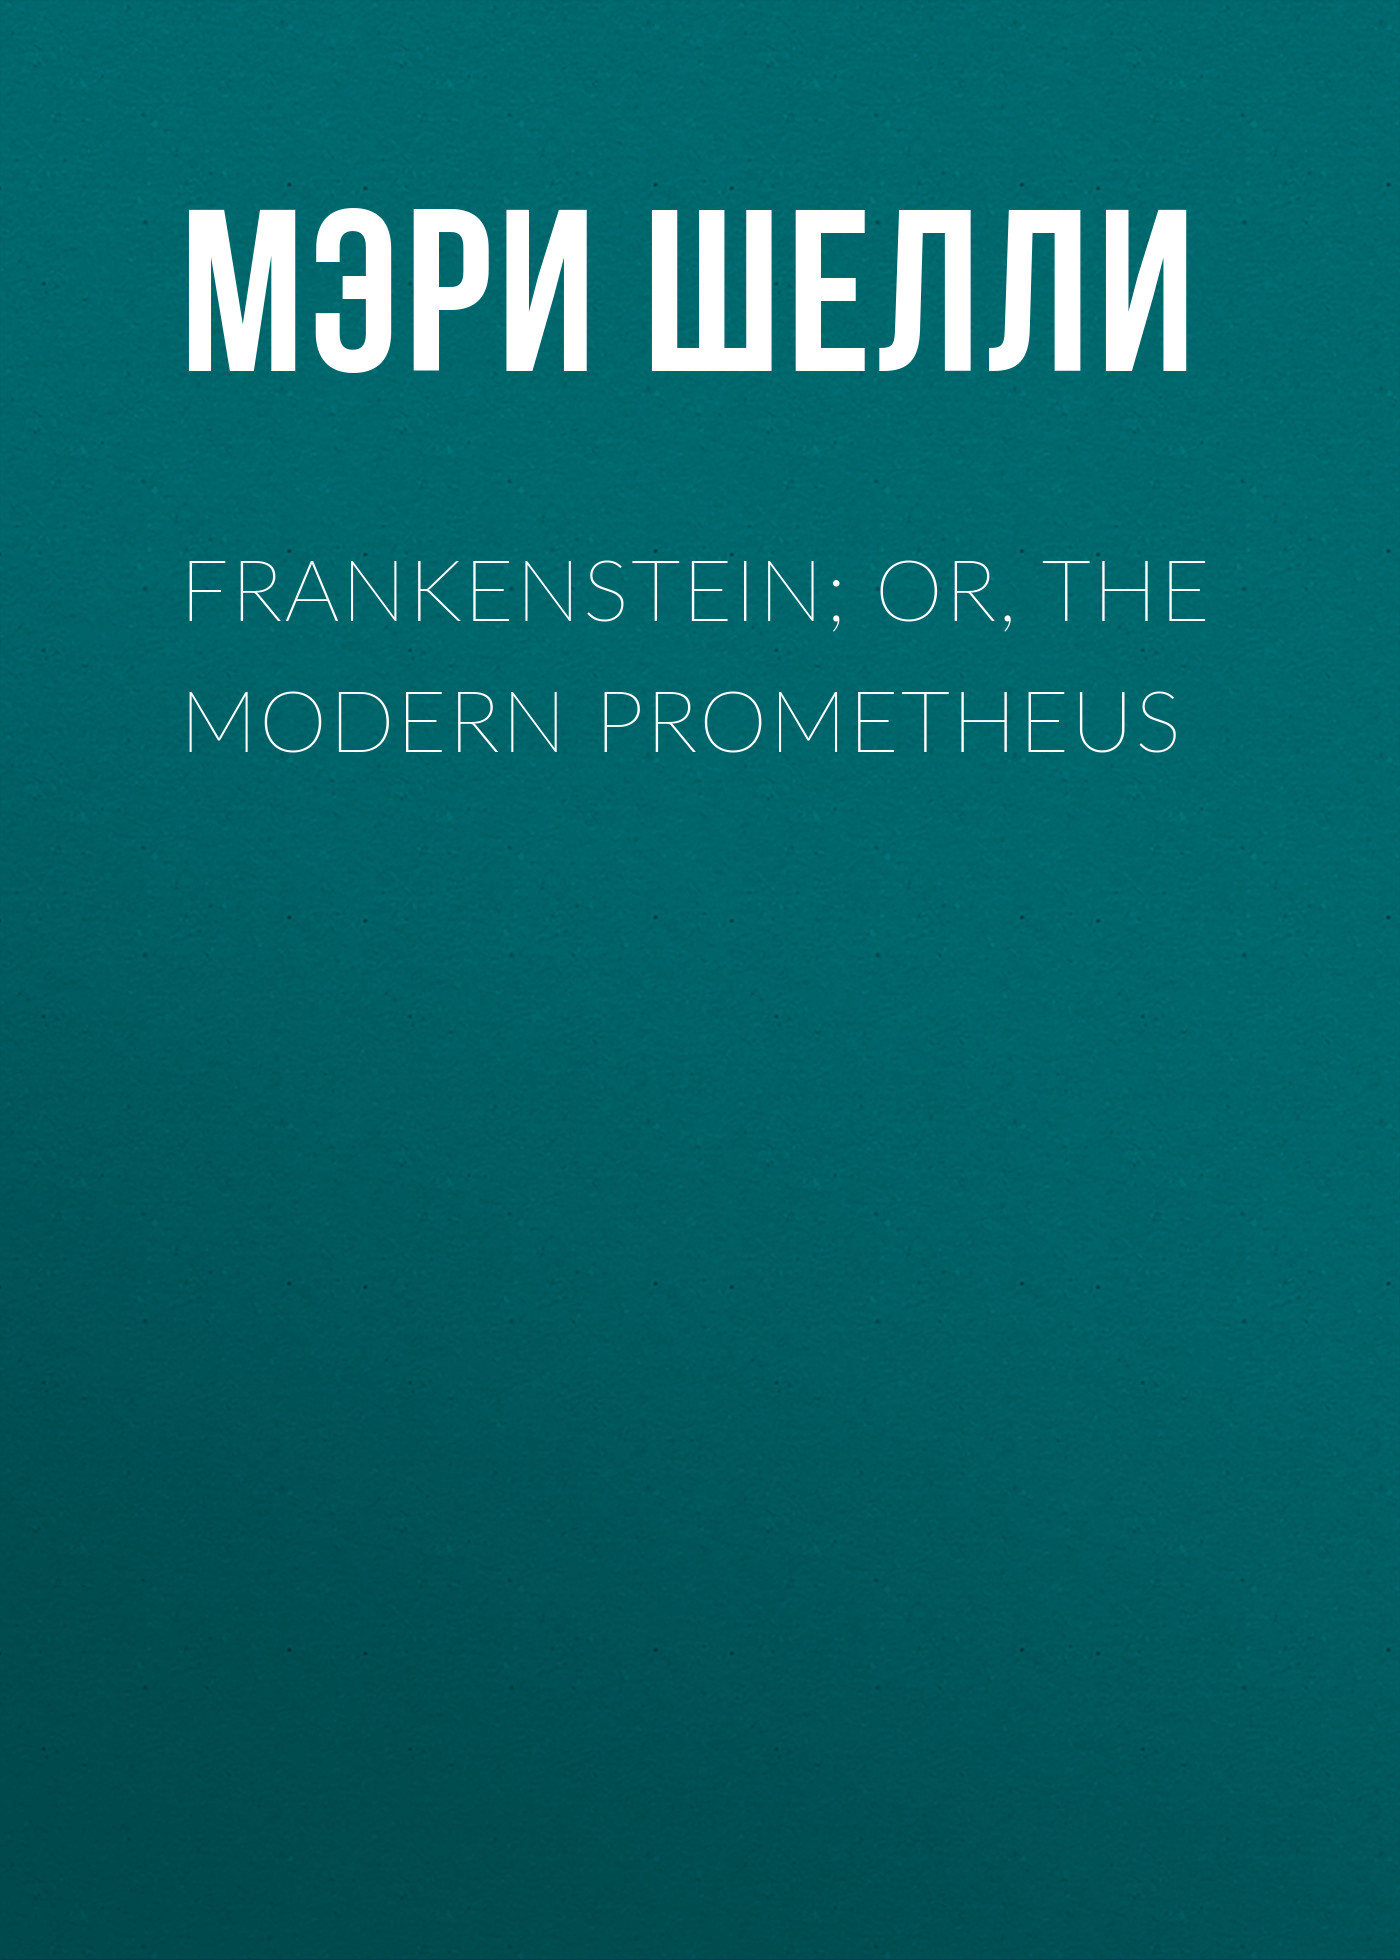 Книга Frankenstein; Or, The Modern Prometheus из серии , созданная Мэри Шелли, может относится к жанру Литература 19 века, Зарубежная старинная литература, Зарубежная классика. Стоимость электронной книги Frankenstein; Or, The Modern Prometheus с идентификатором 25474735 составляет 0 руб.